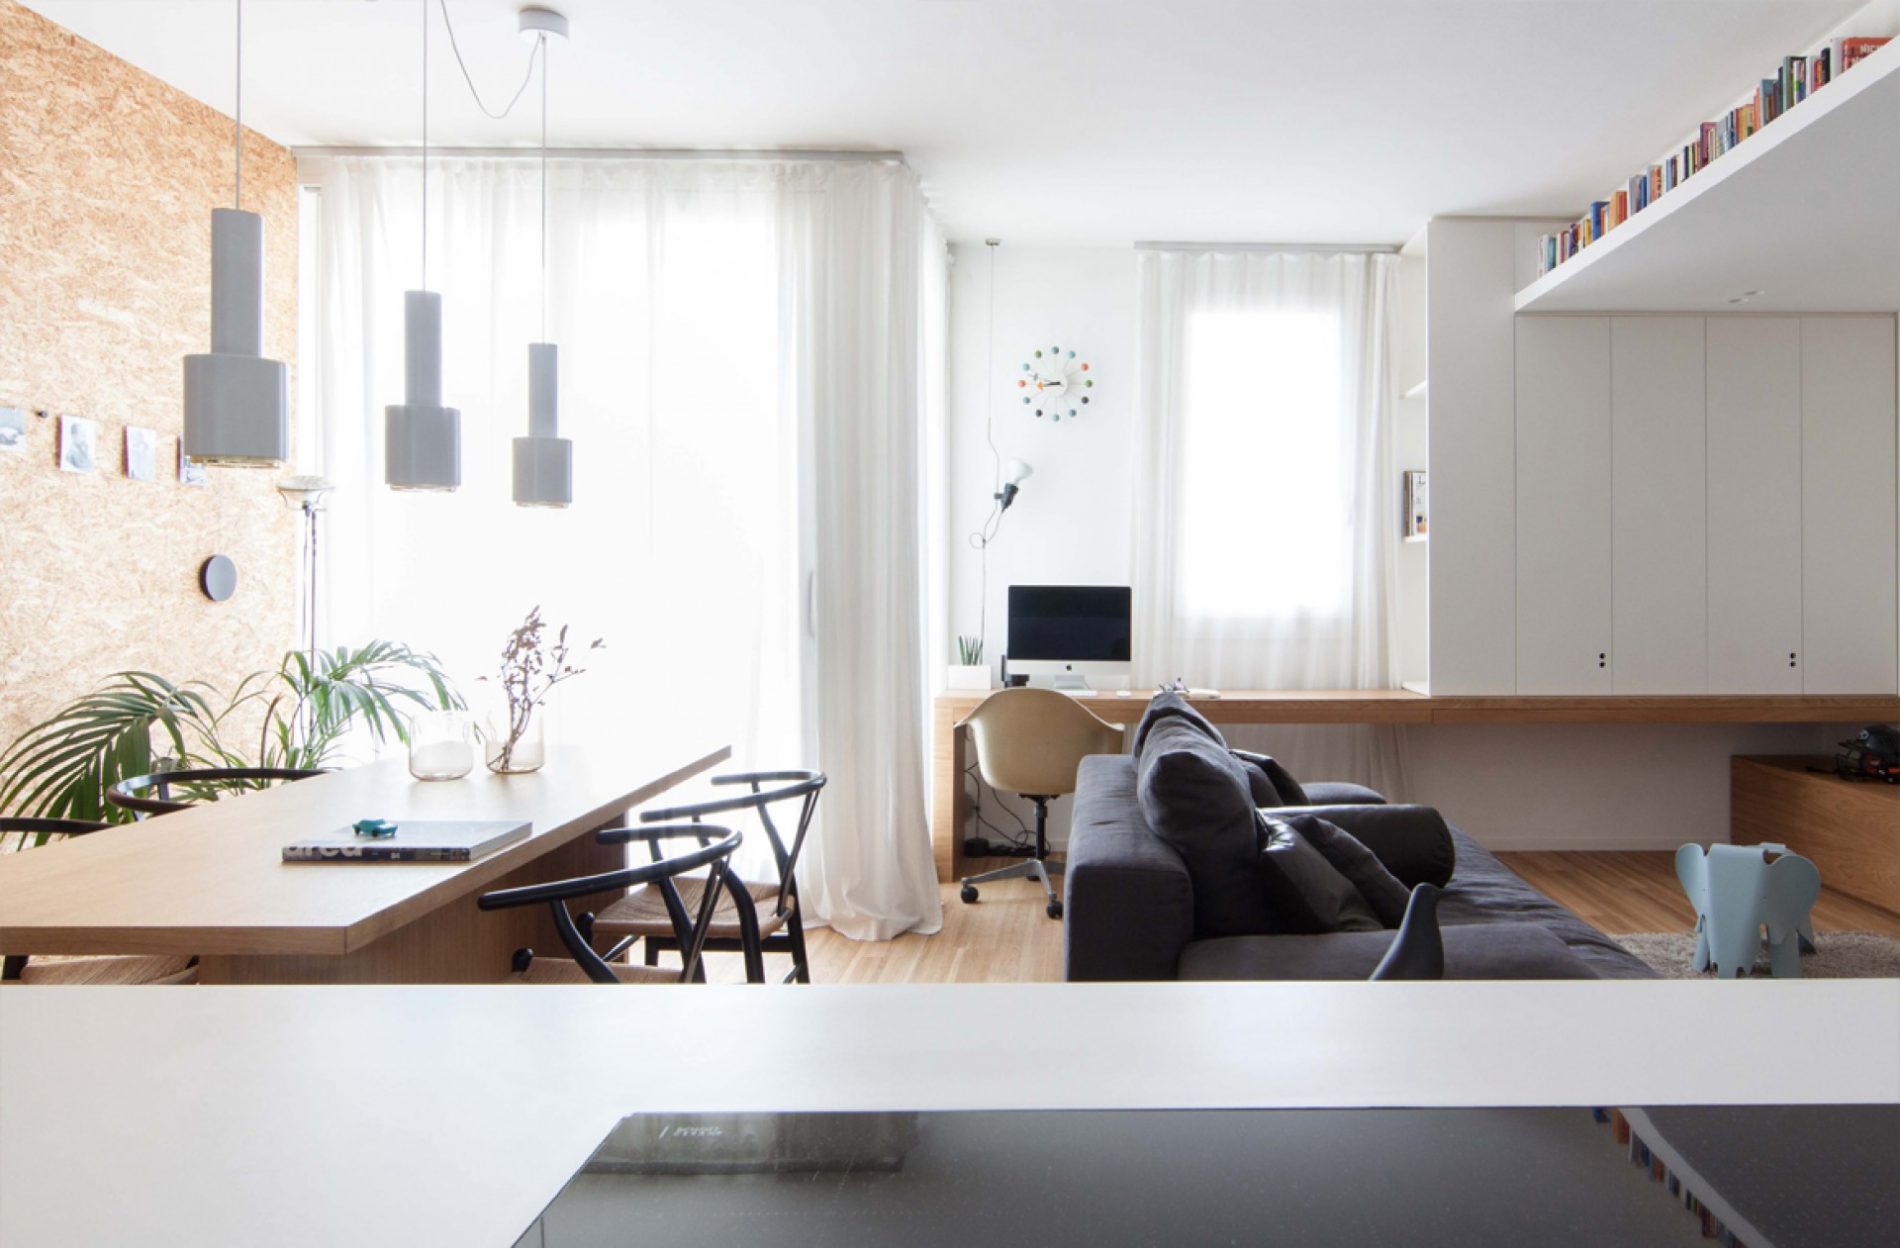 Italian minimalism in interior design